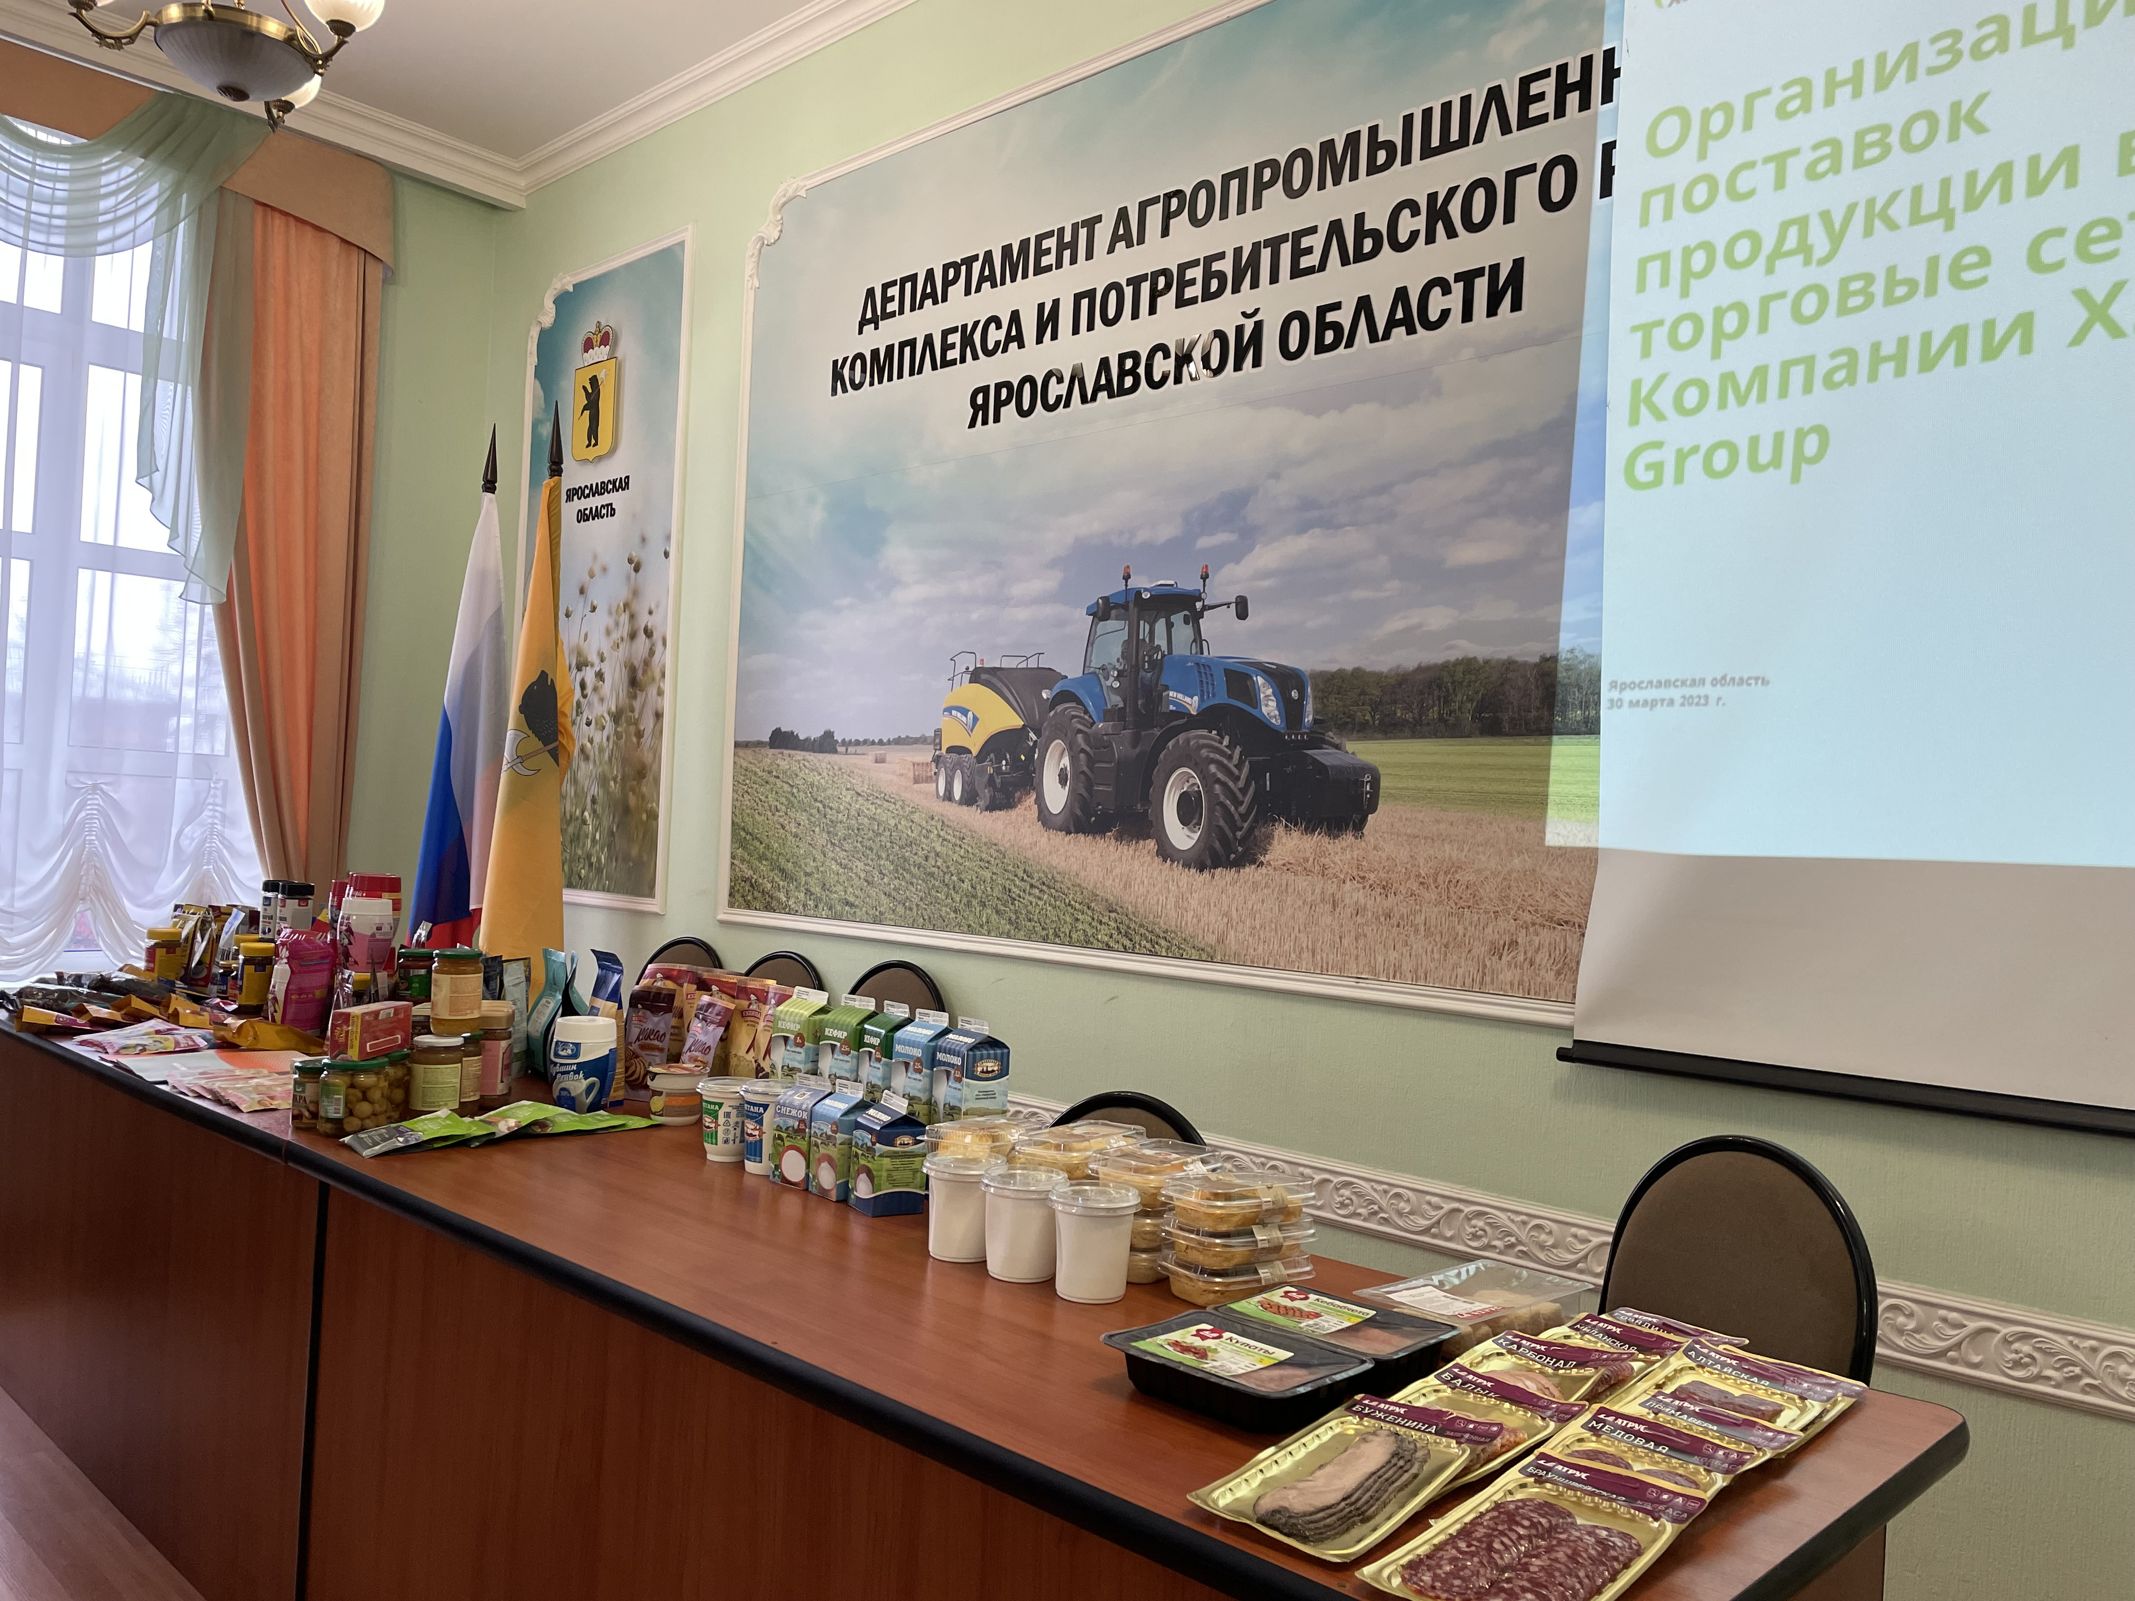 Ярославским производителям помогают реализовывать продукцию через крупные торговые сети